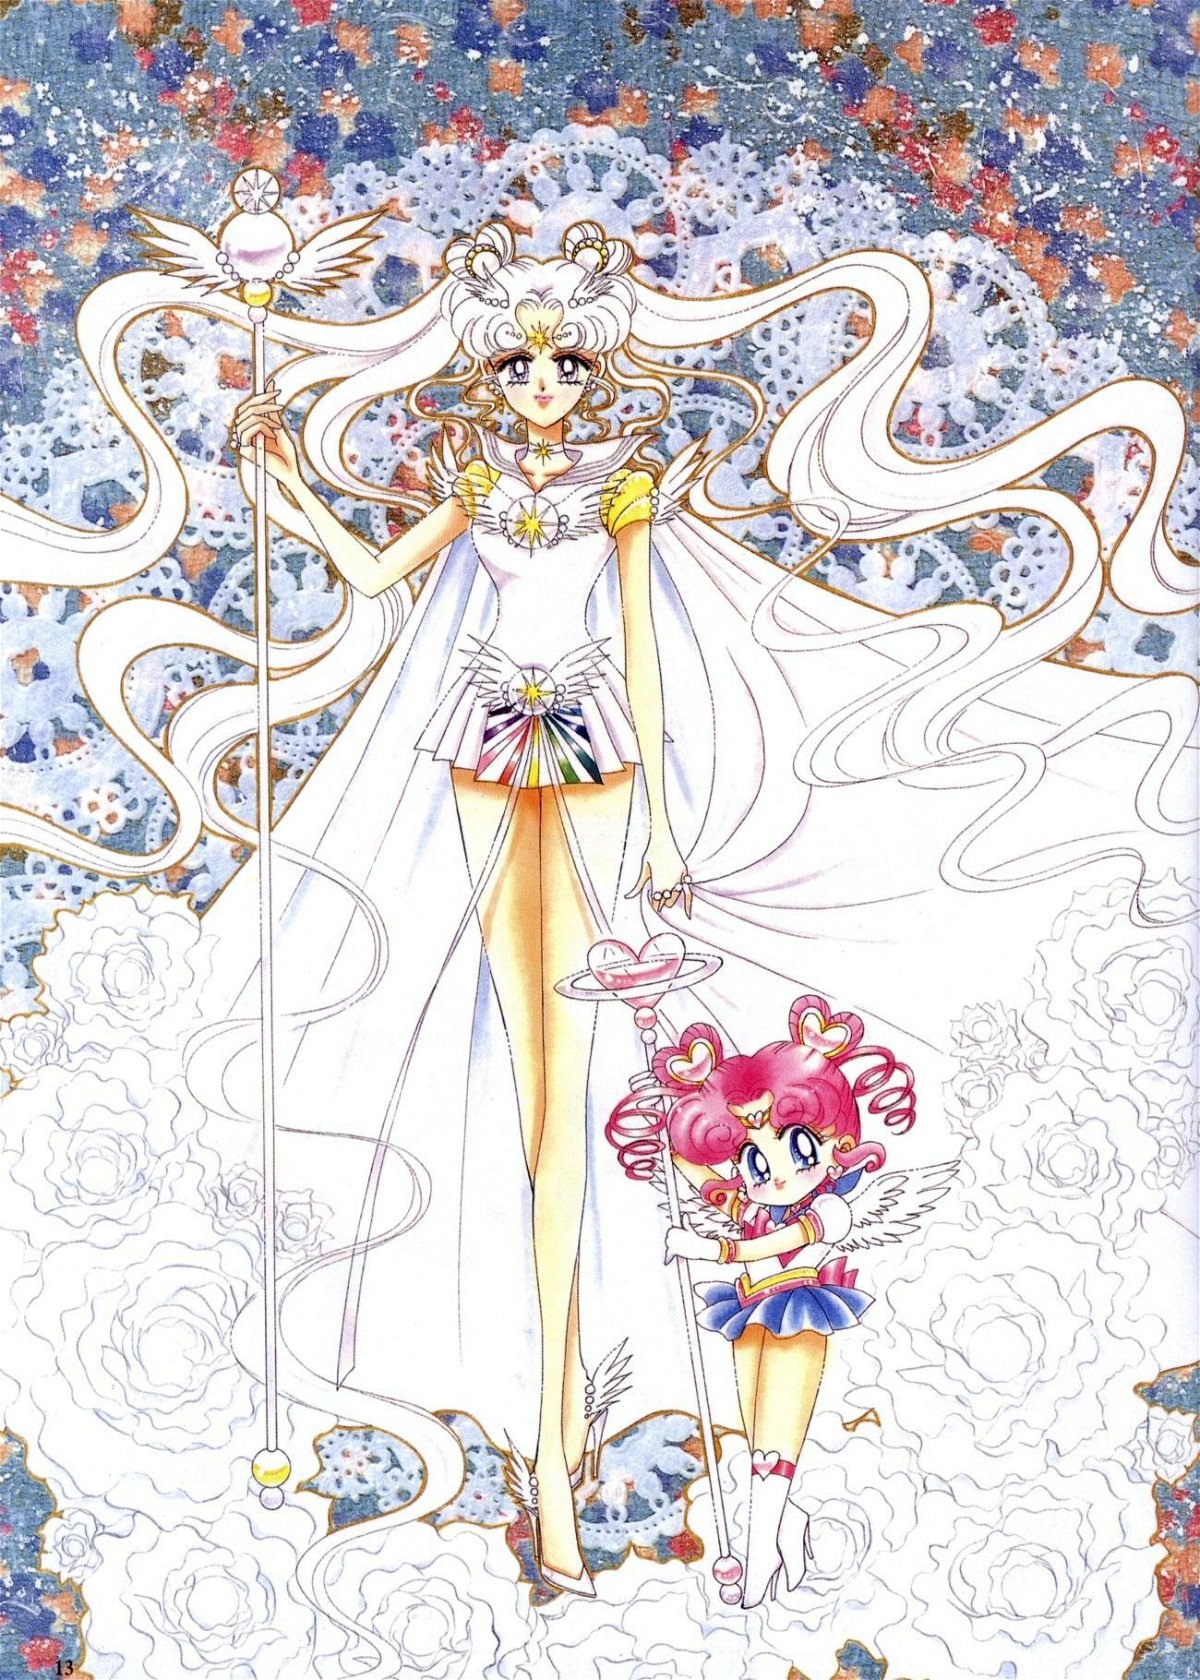 Οι Sailor Comos και ChbiChibi σχεδιάστηκαν από την Naoko Takeuchi